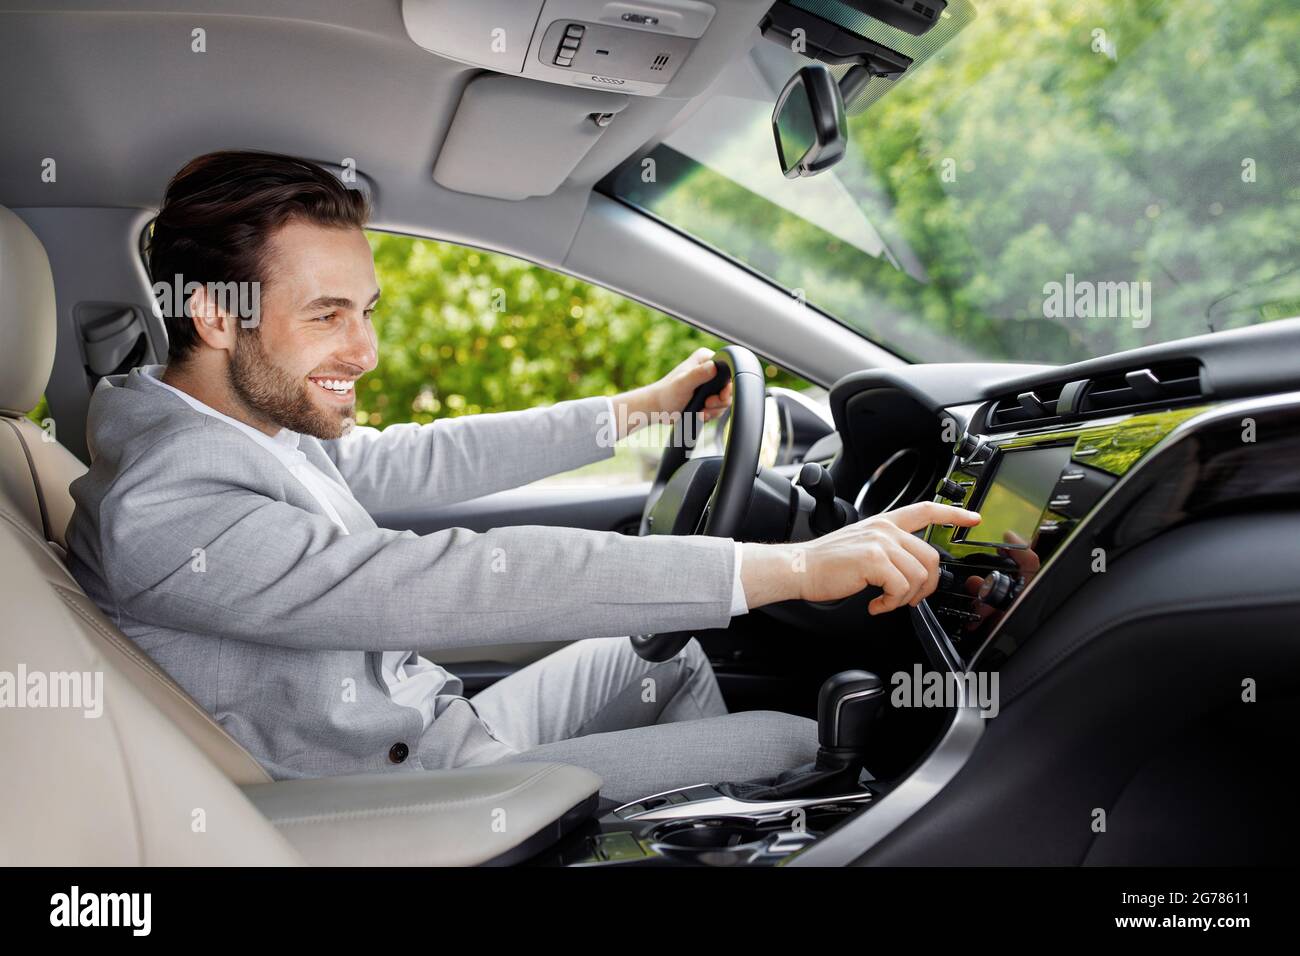 Controllo touch screen in un'auto moderna e confortevole, con persone e tecnologia Foto Stock